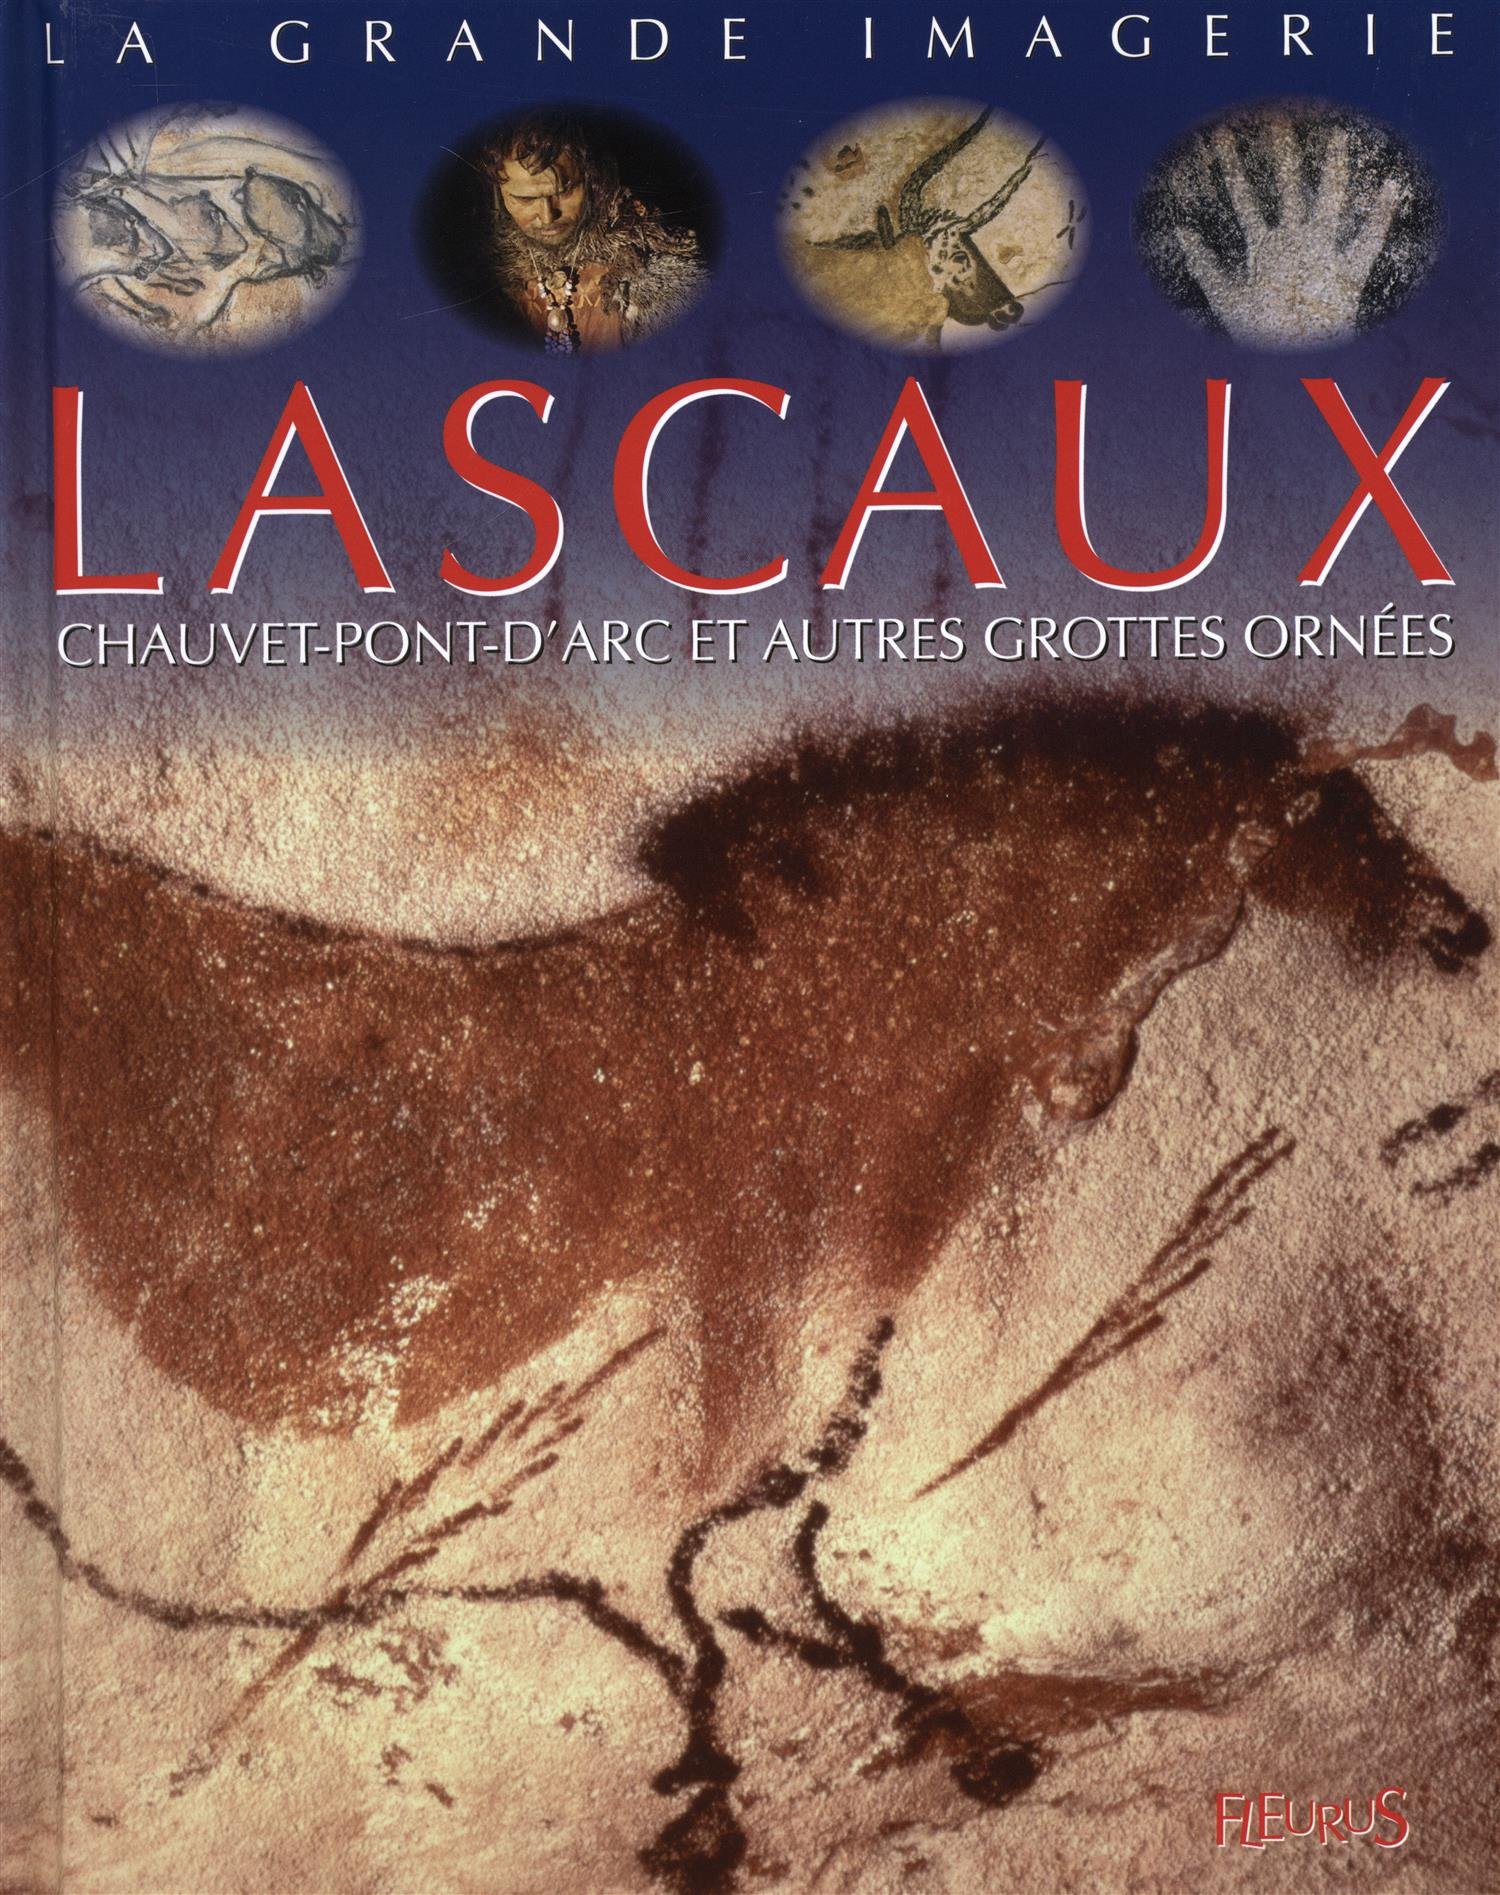 Lascaux, Chauvet-Pont-d'Arc et autres grottes ornées, (coll. La Grande Imagerie), 2015, 28 p. Livre pour enfant